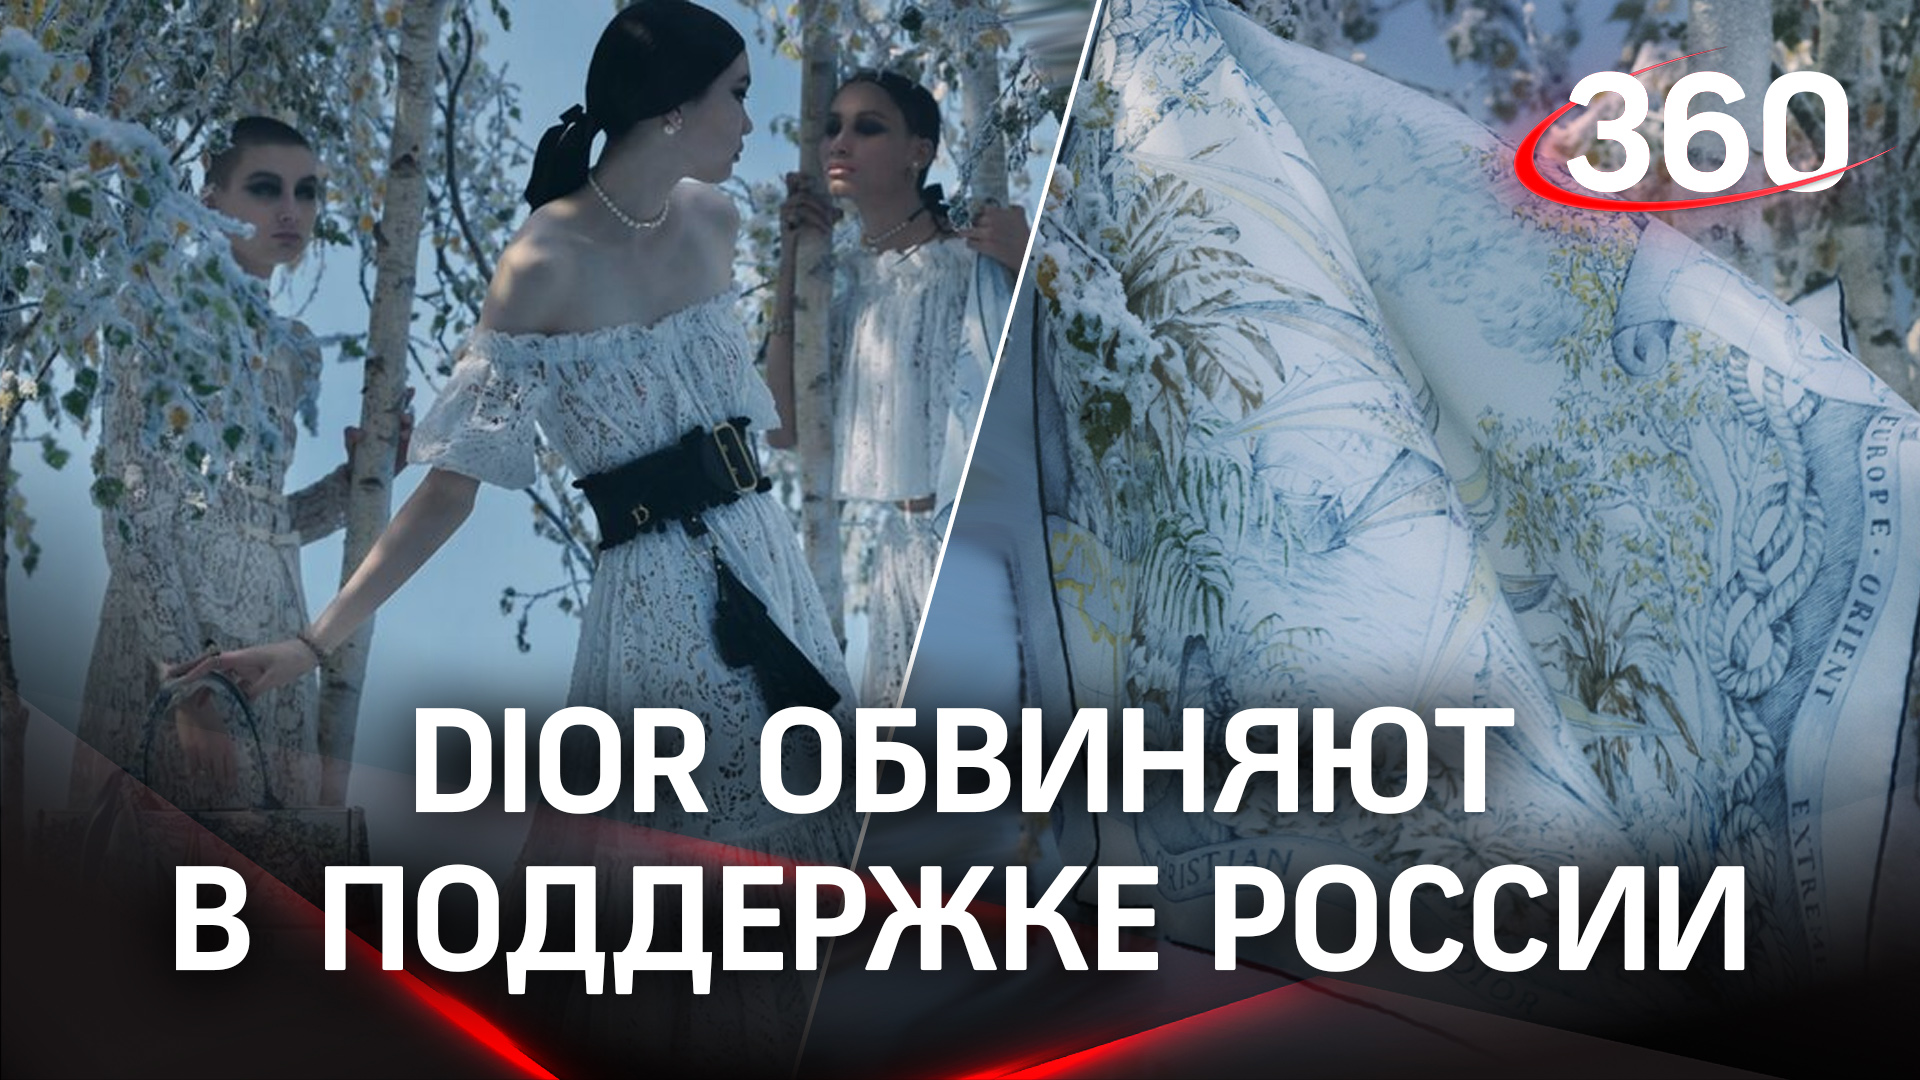 Dior обвинили в скрытой поддержке России